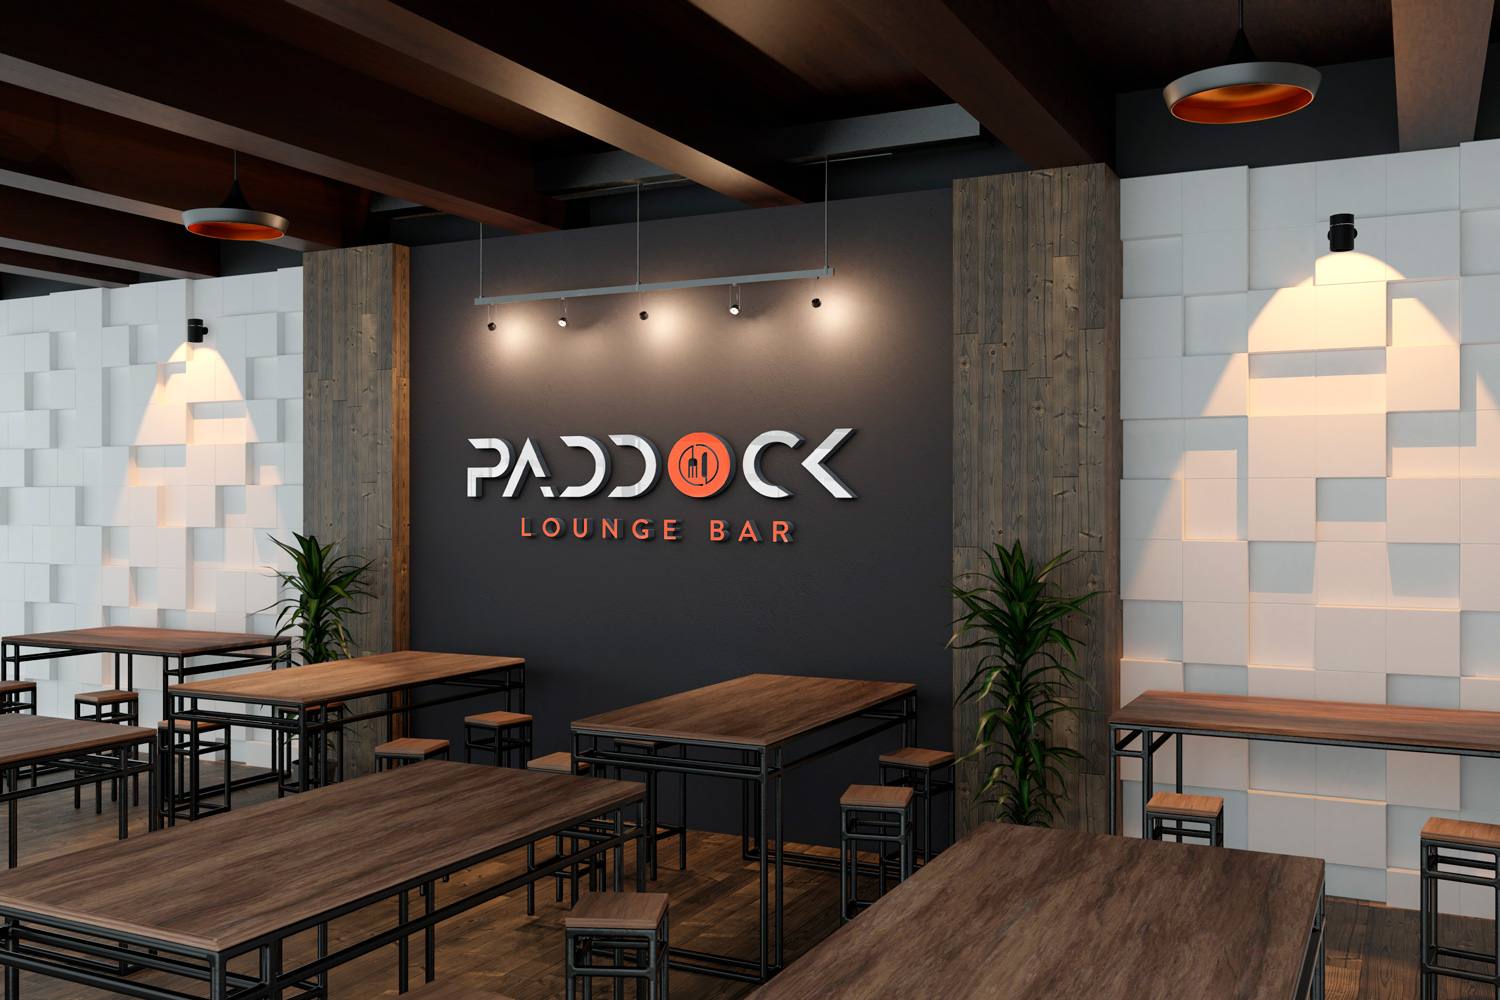 Paddock Lounge